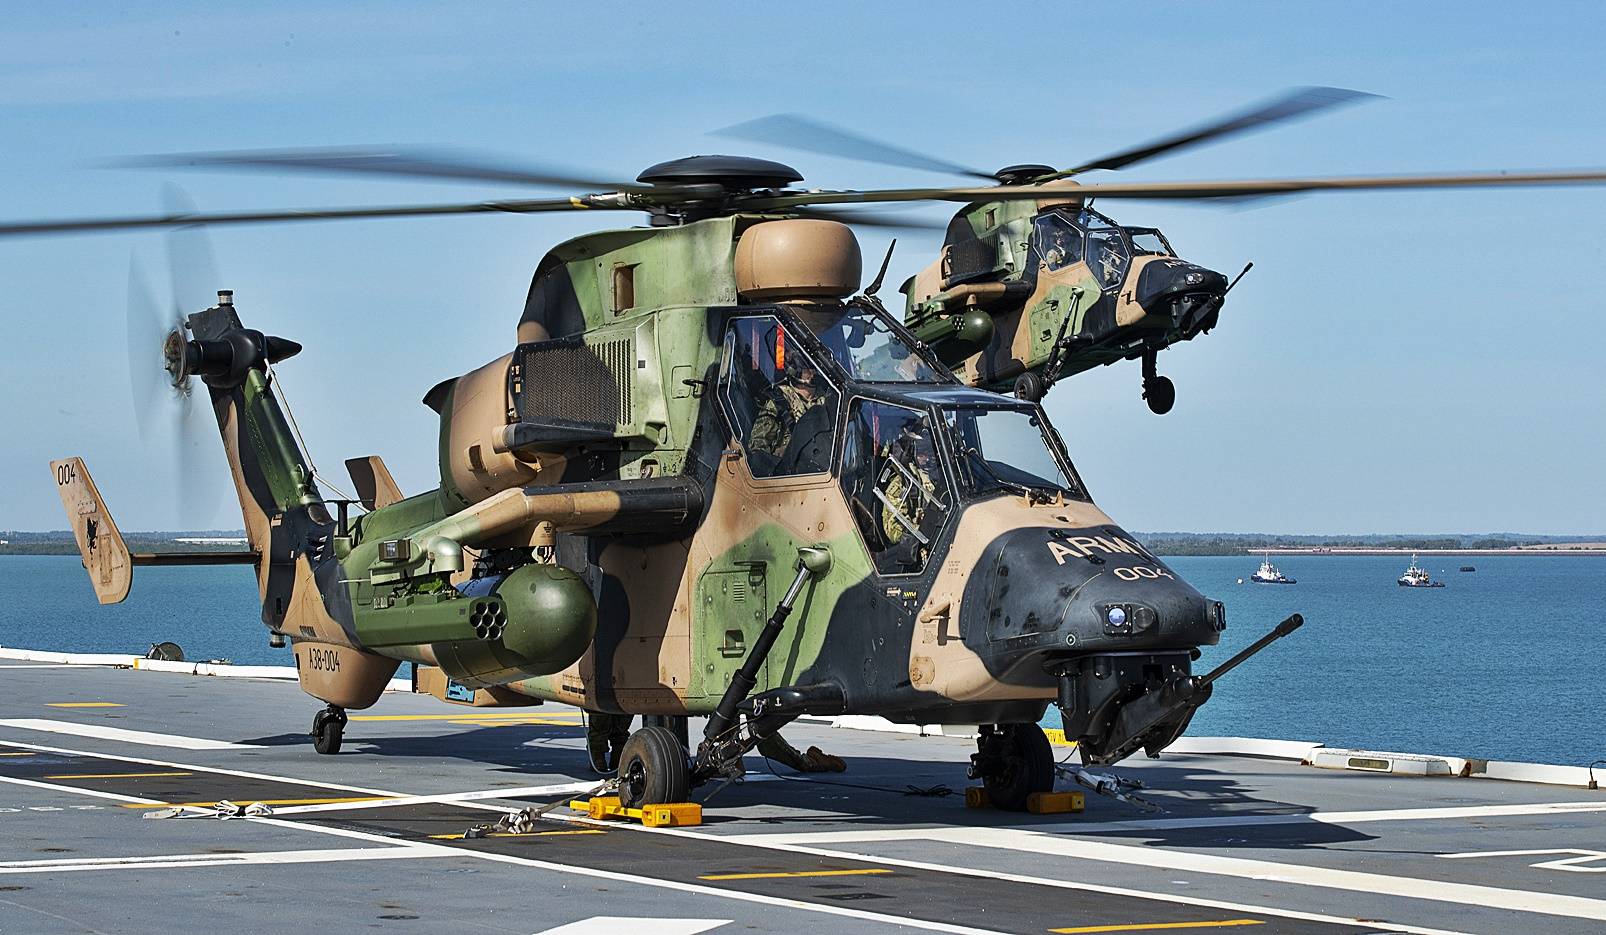 原创虎式武装直升机空中机动性能续航力机炮射击精确度方面均优于ah64